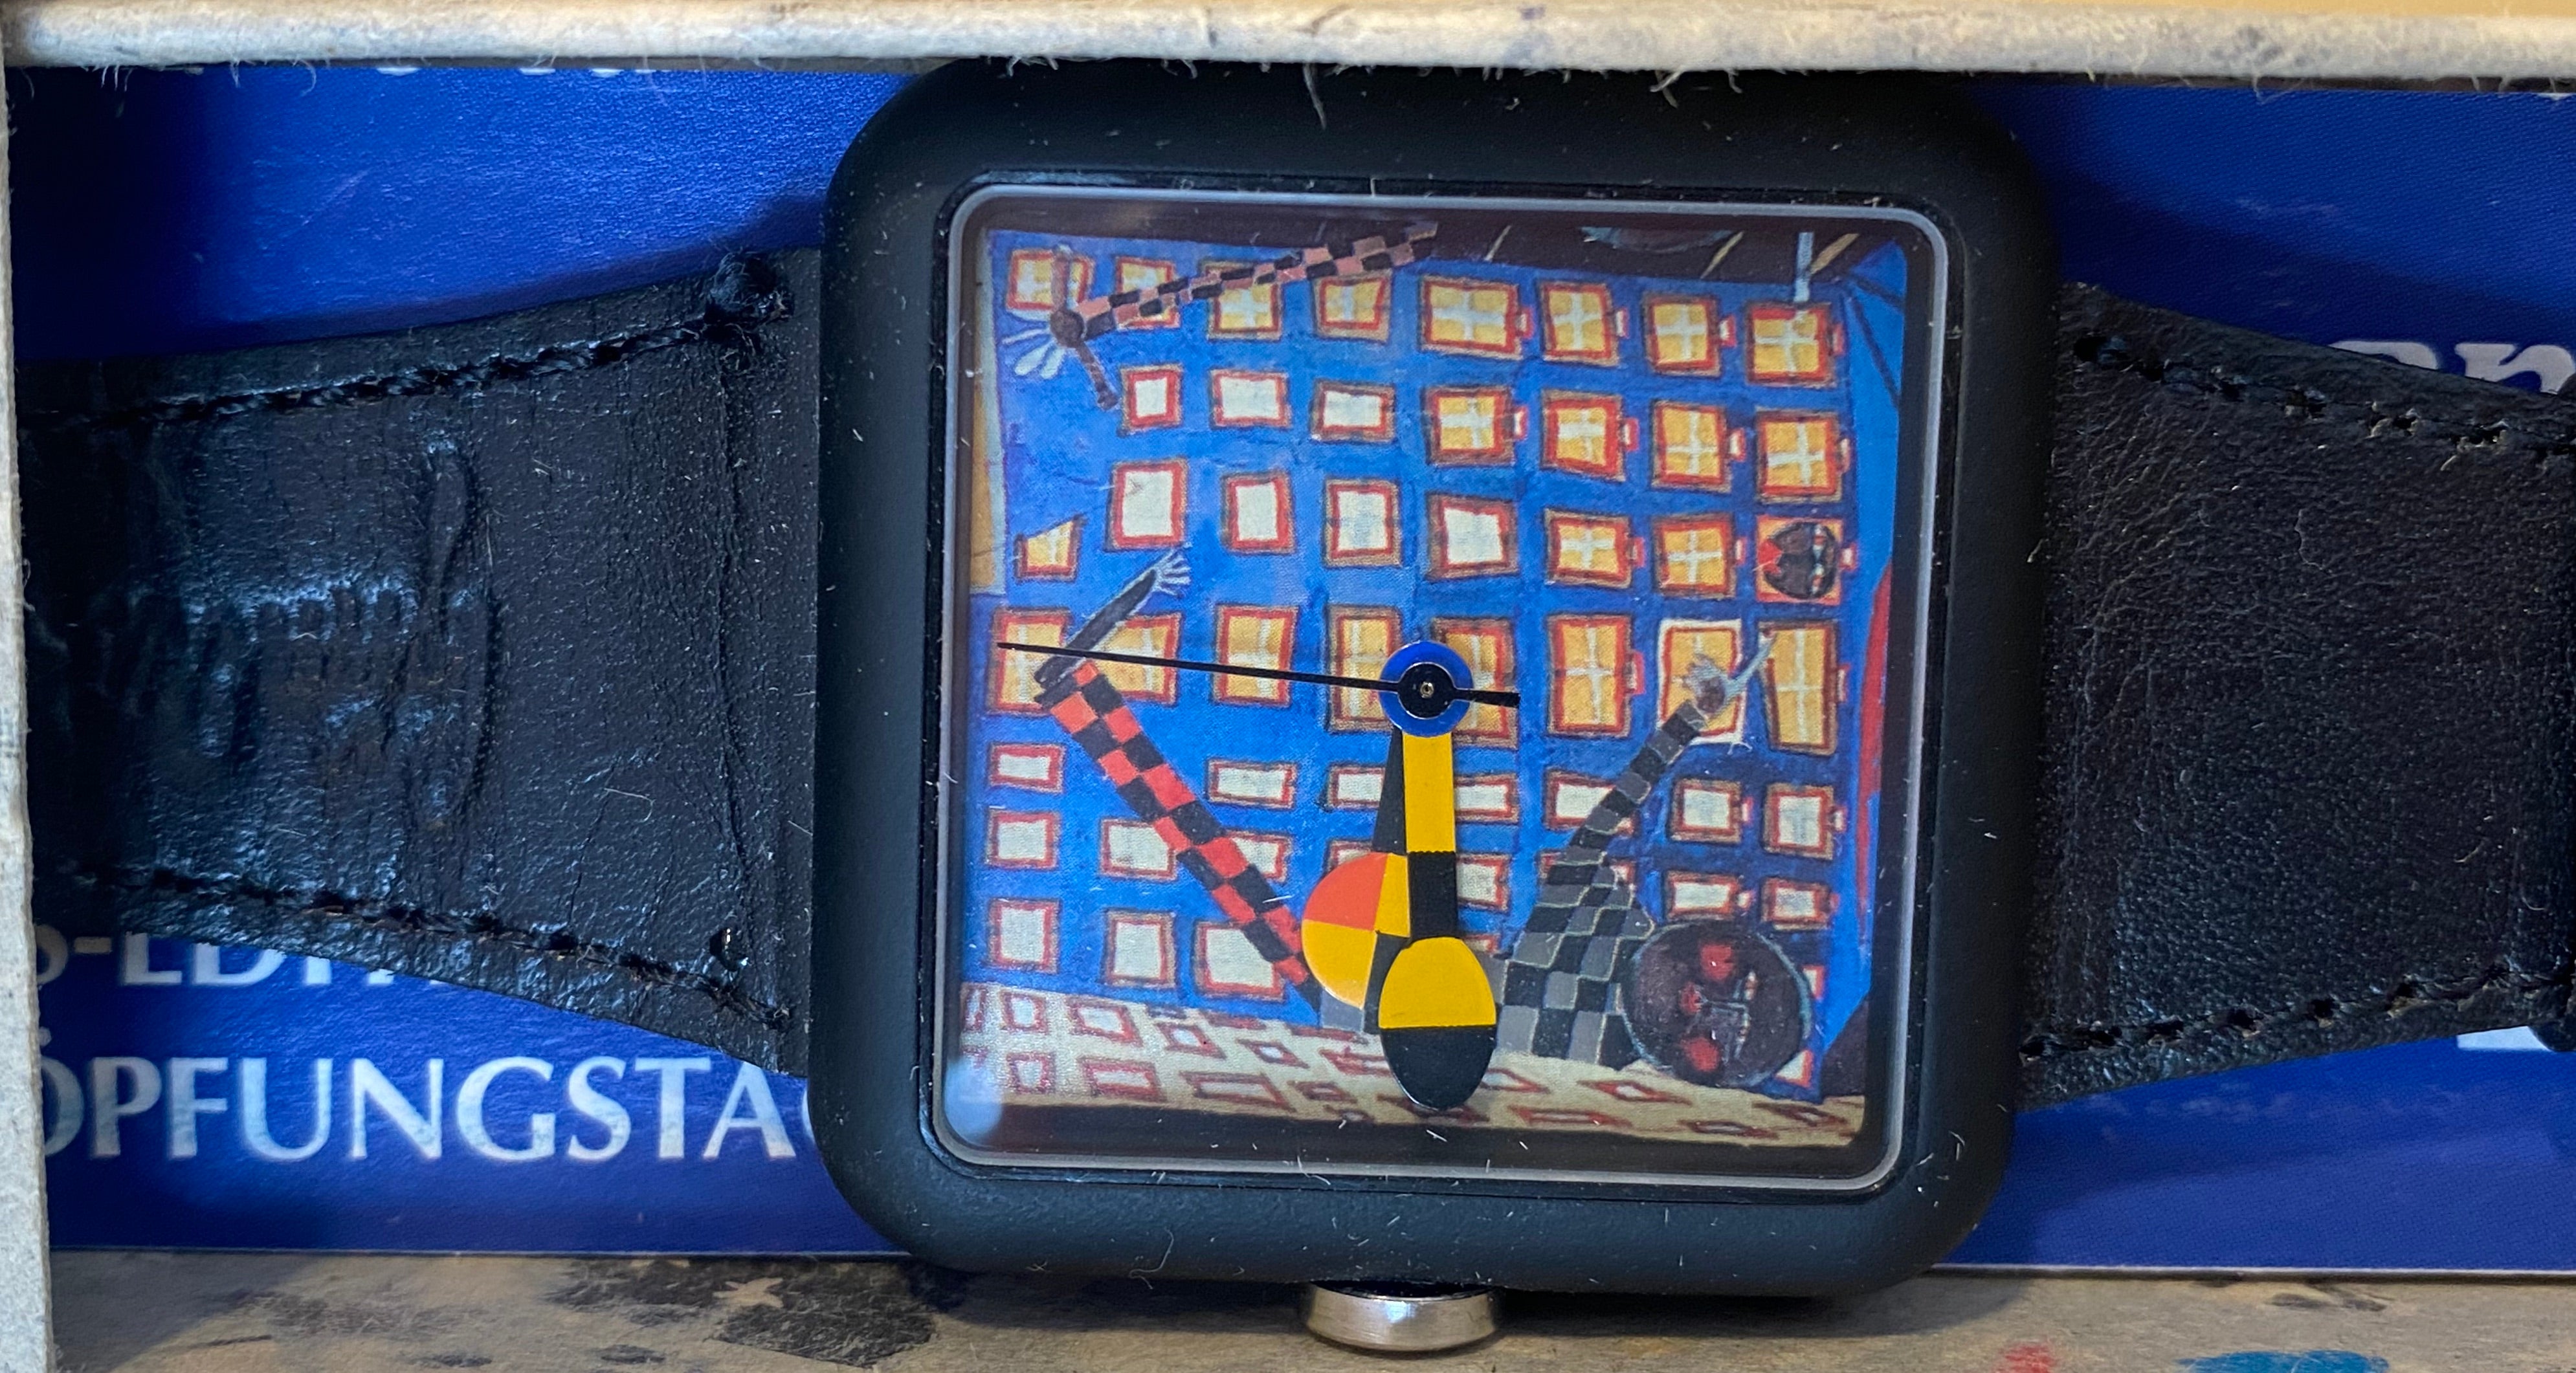 Die Uhr wurde von dem österreichischen Künstler Hundertwasser entworfen.
Seltene Uhr, neu ab Lager.
Verkauft mit Box und Zertifikat.
CIRCA : 1995
Durchmesser: 4 cm
Länge des Riemens: 24 cm.